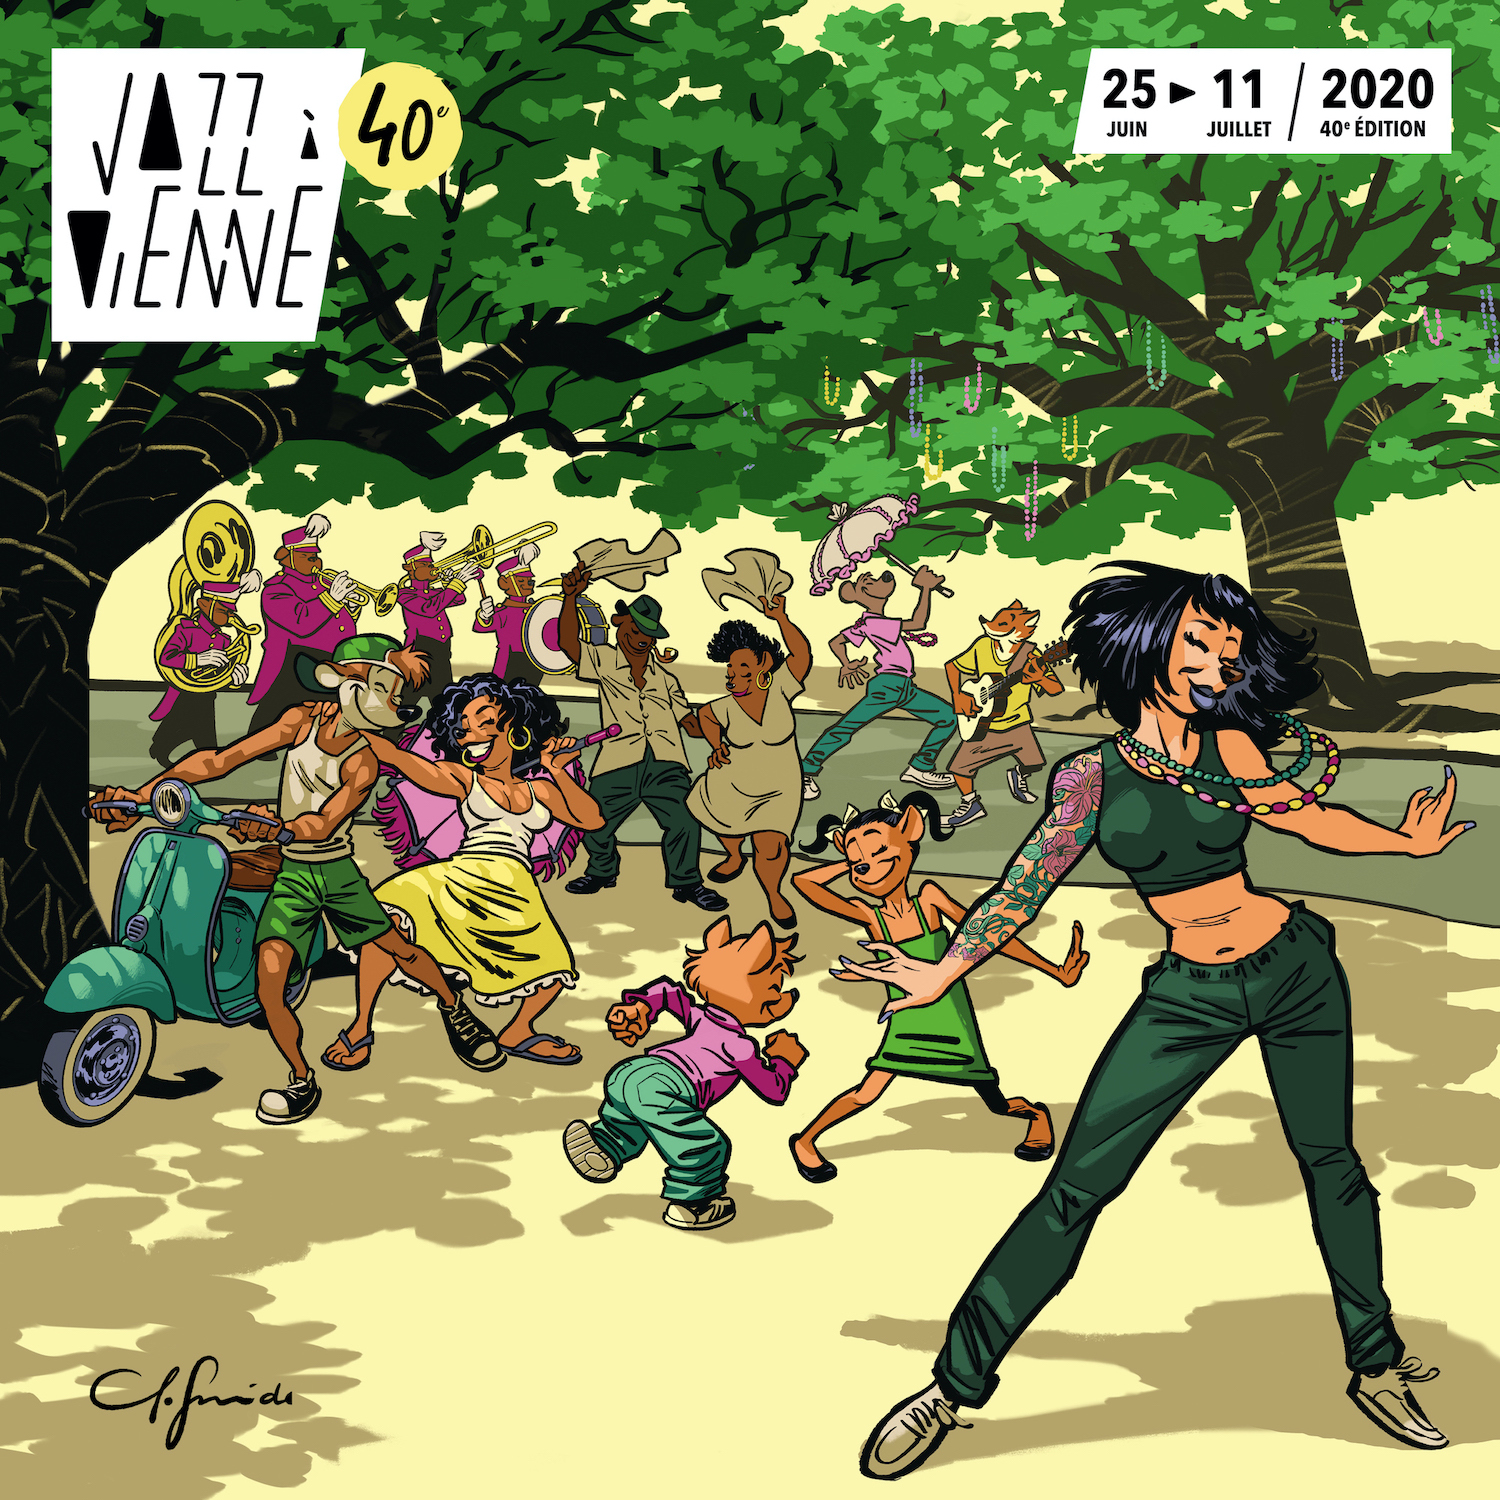 Découvrez l'affiche de la 40e édition de Jazz à Vienne par Juanjo Guarnido.